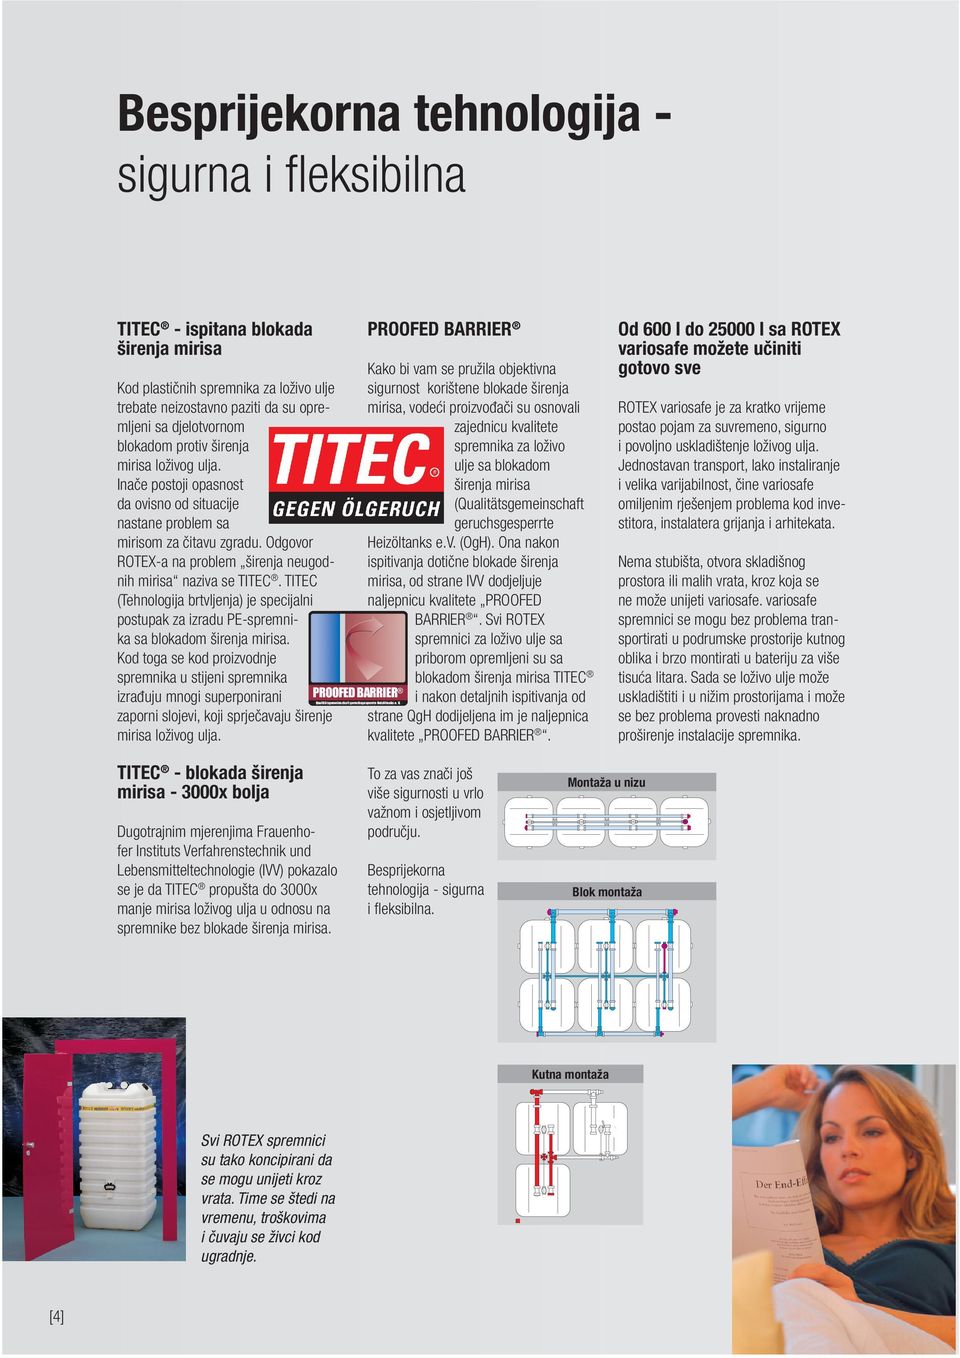 TITEC (Tehnologija brtvljenja) je specijalni postupak za izradu PE-spremnika sa blokadom širenja mirisa.